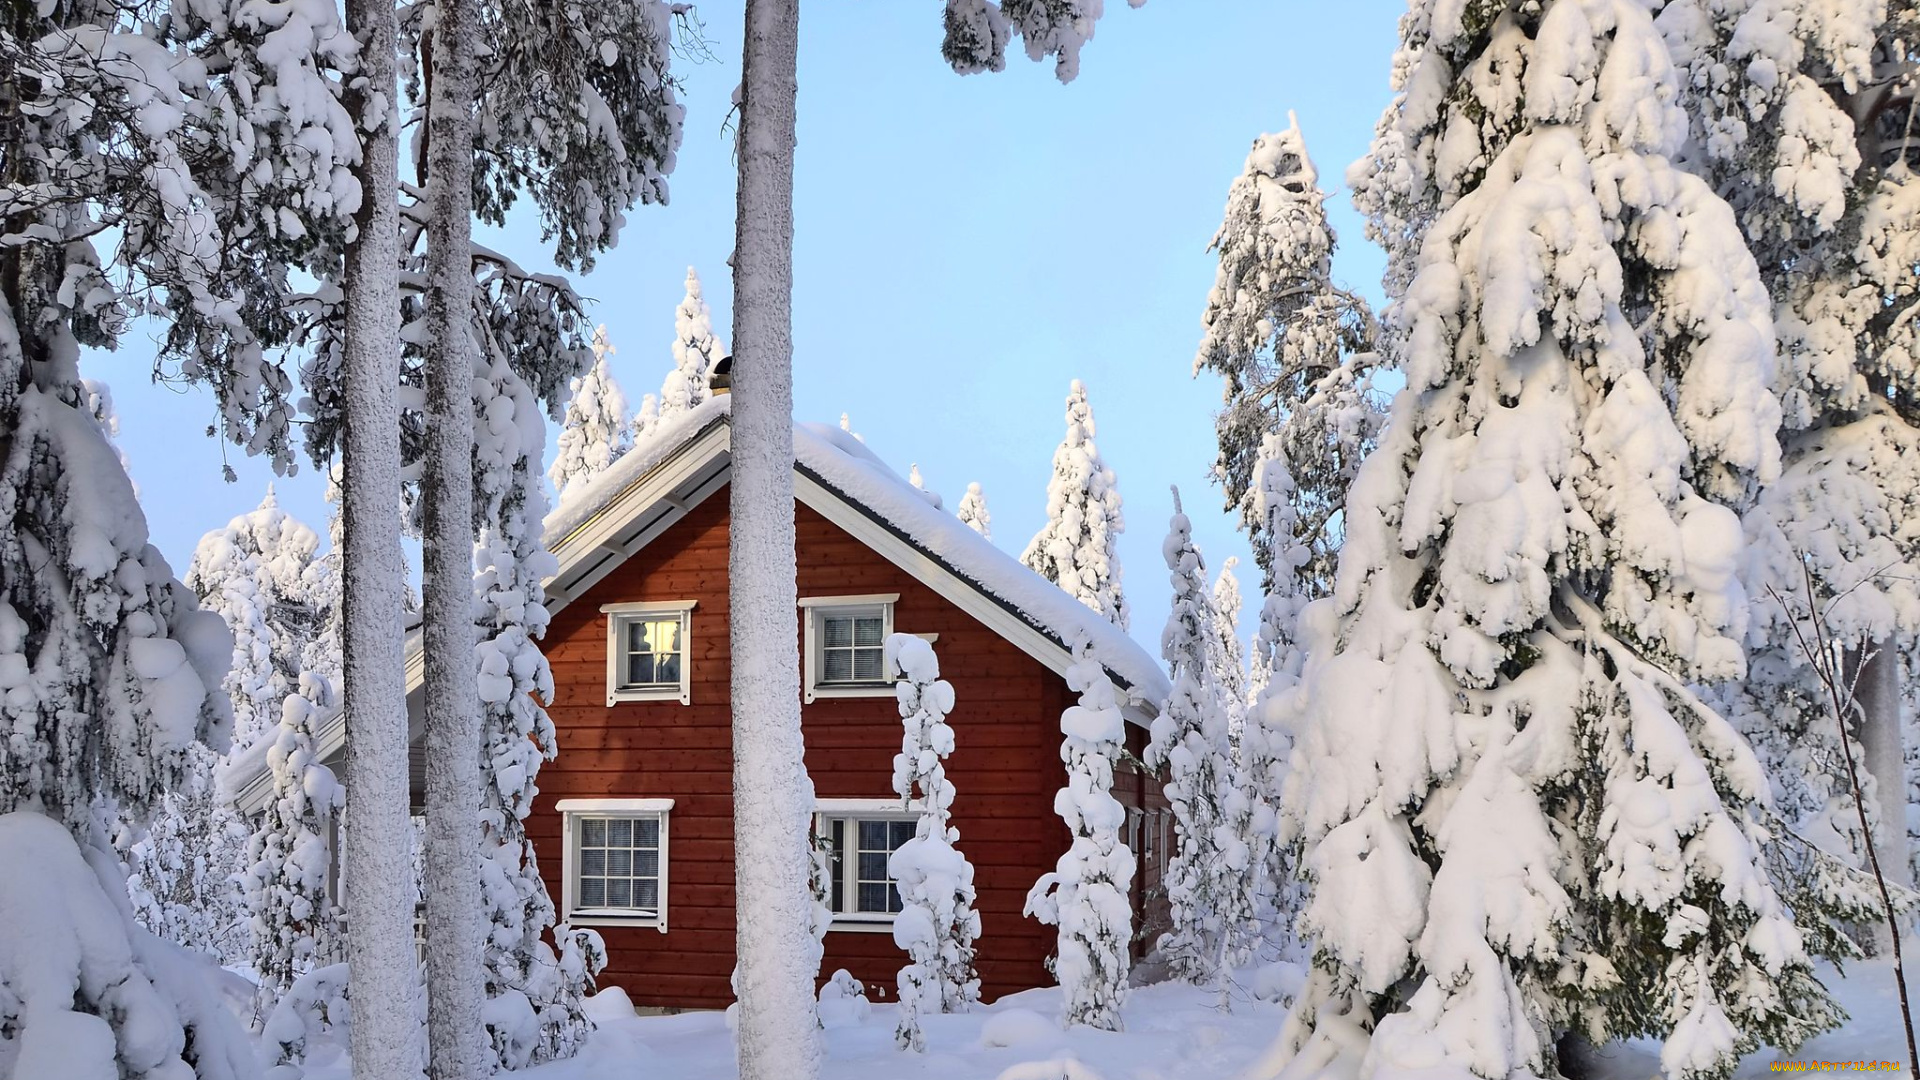 города, -, здания, , дома, снег, зима, деревья, финляндия